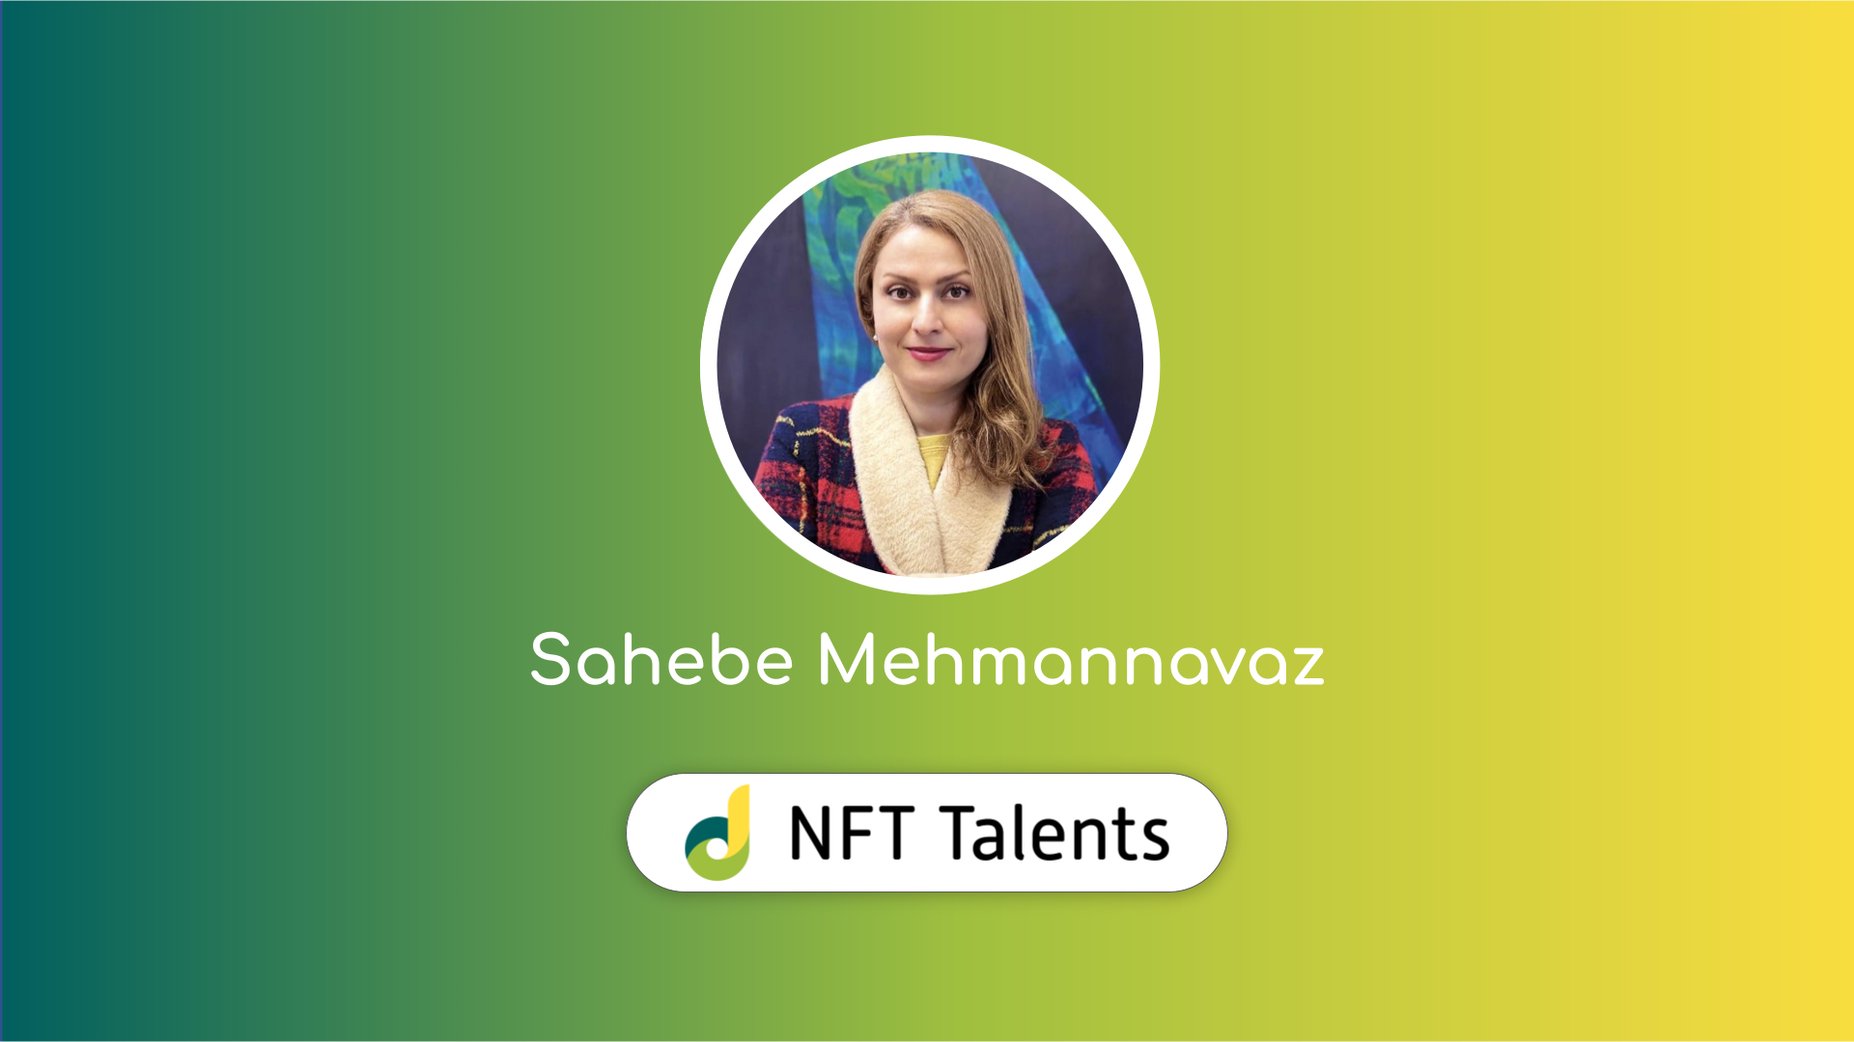 NFT Talents Mentor – Sahebe Mehmannavaz